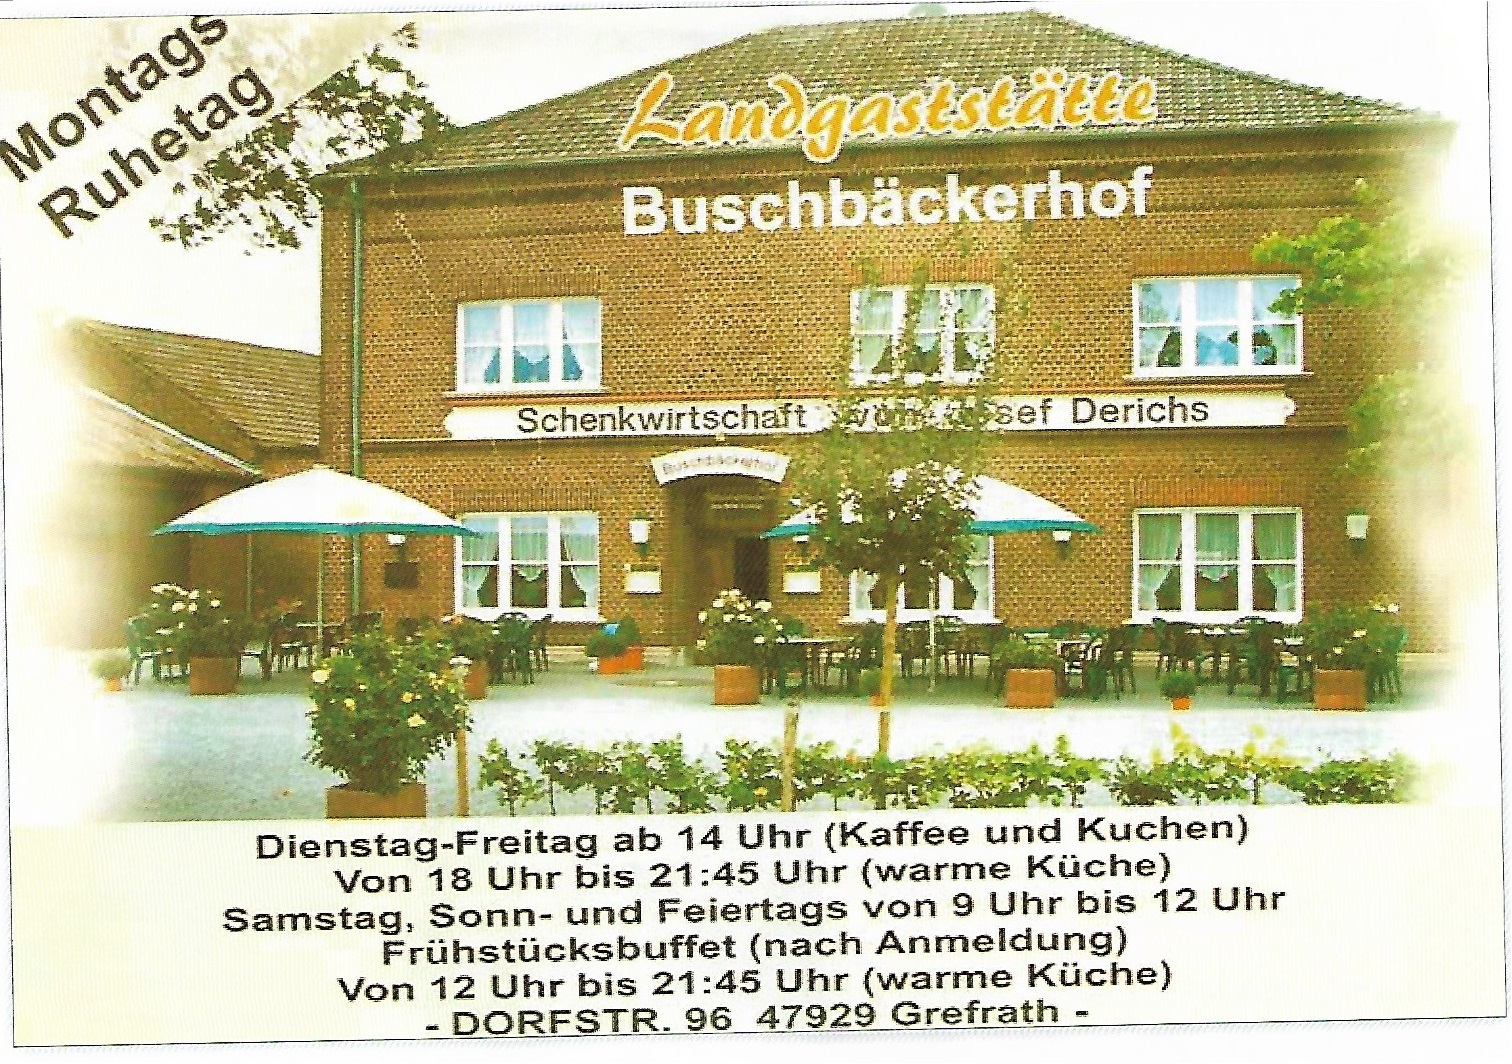 Buschbäckerhof